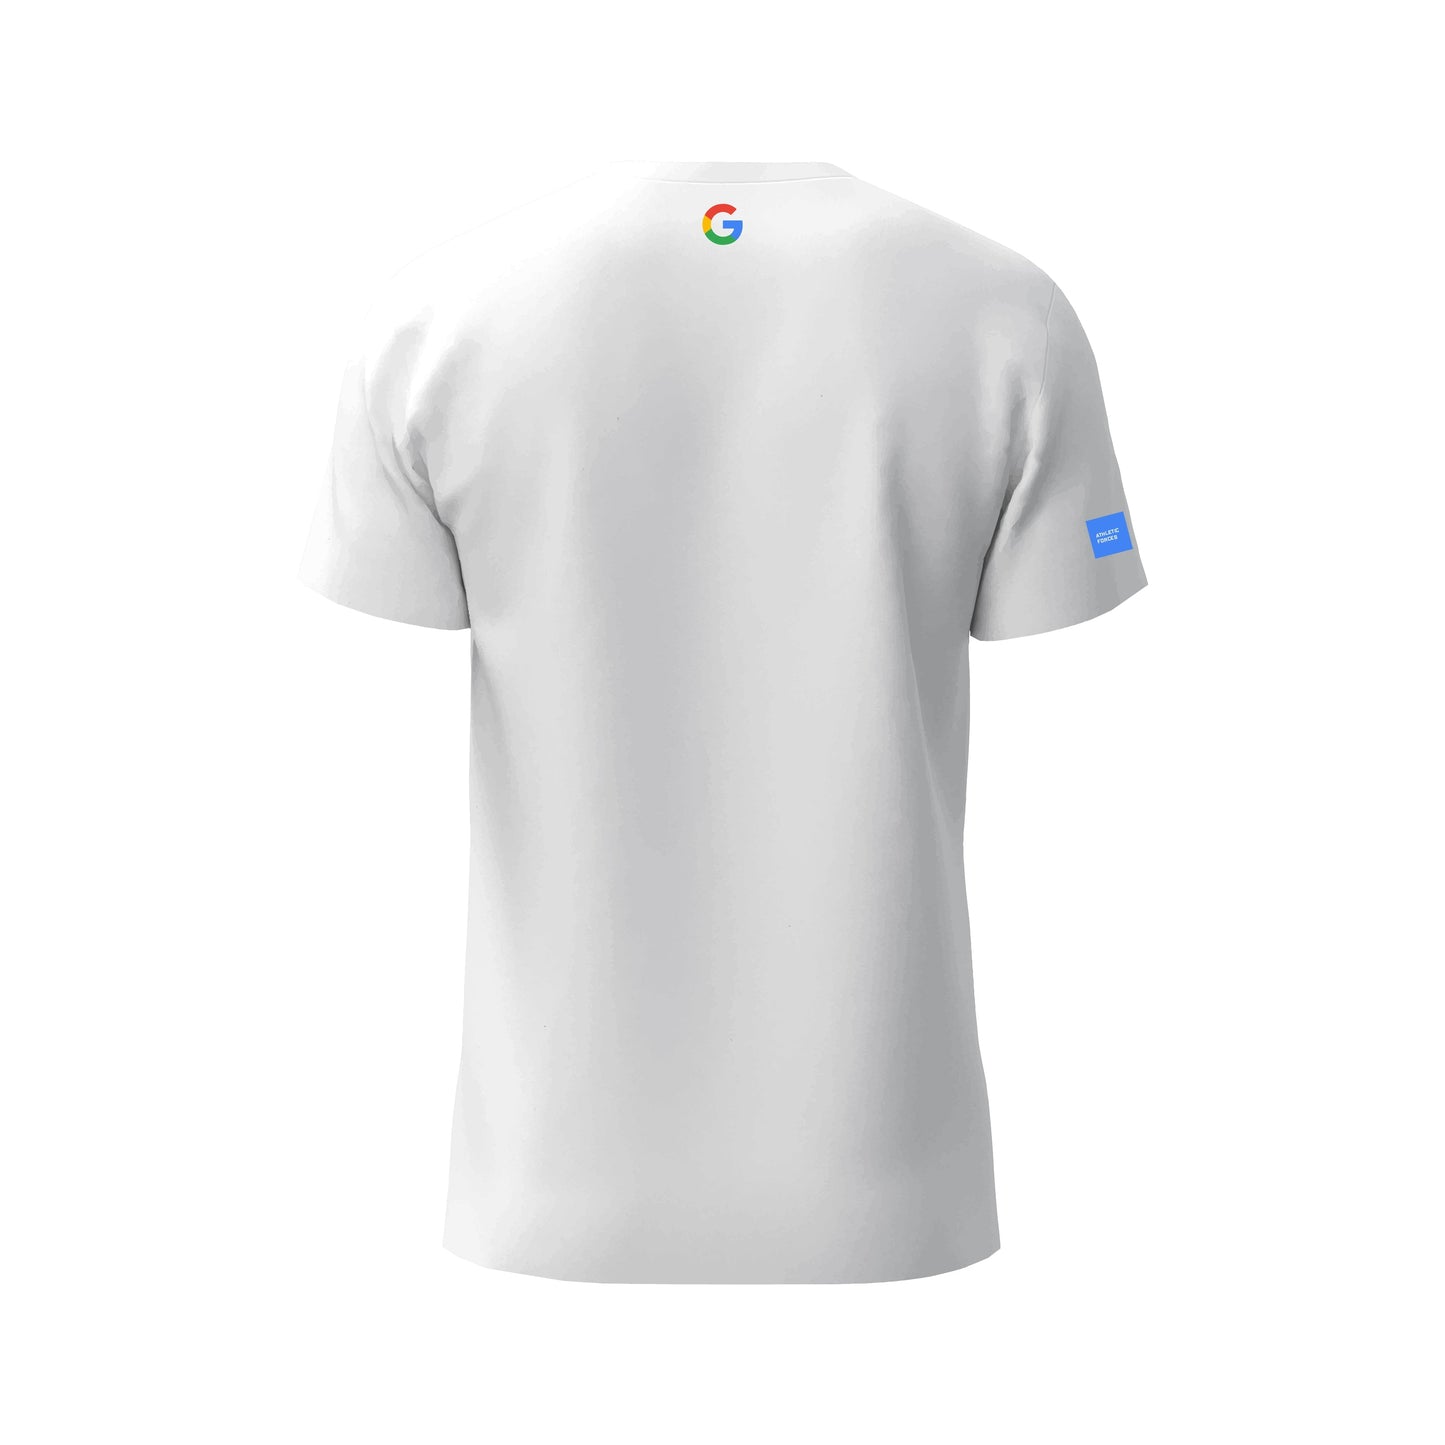 Google - T-shirt Union of Forces ® par Athletic Forces - Modèle 3